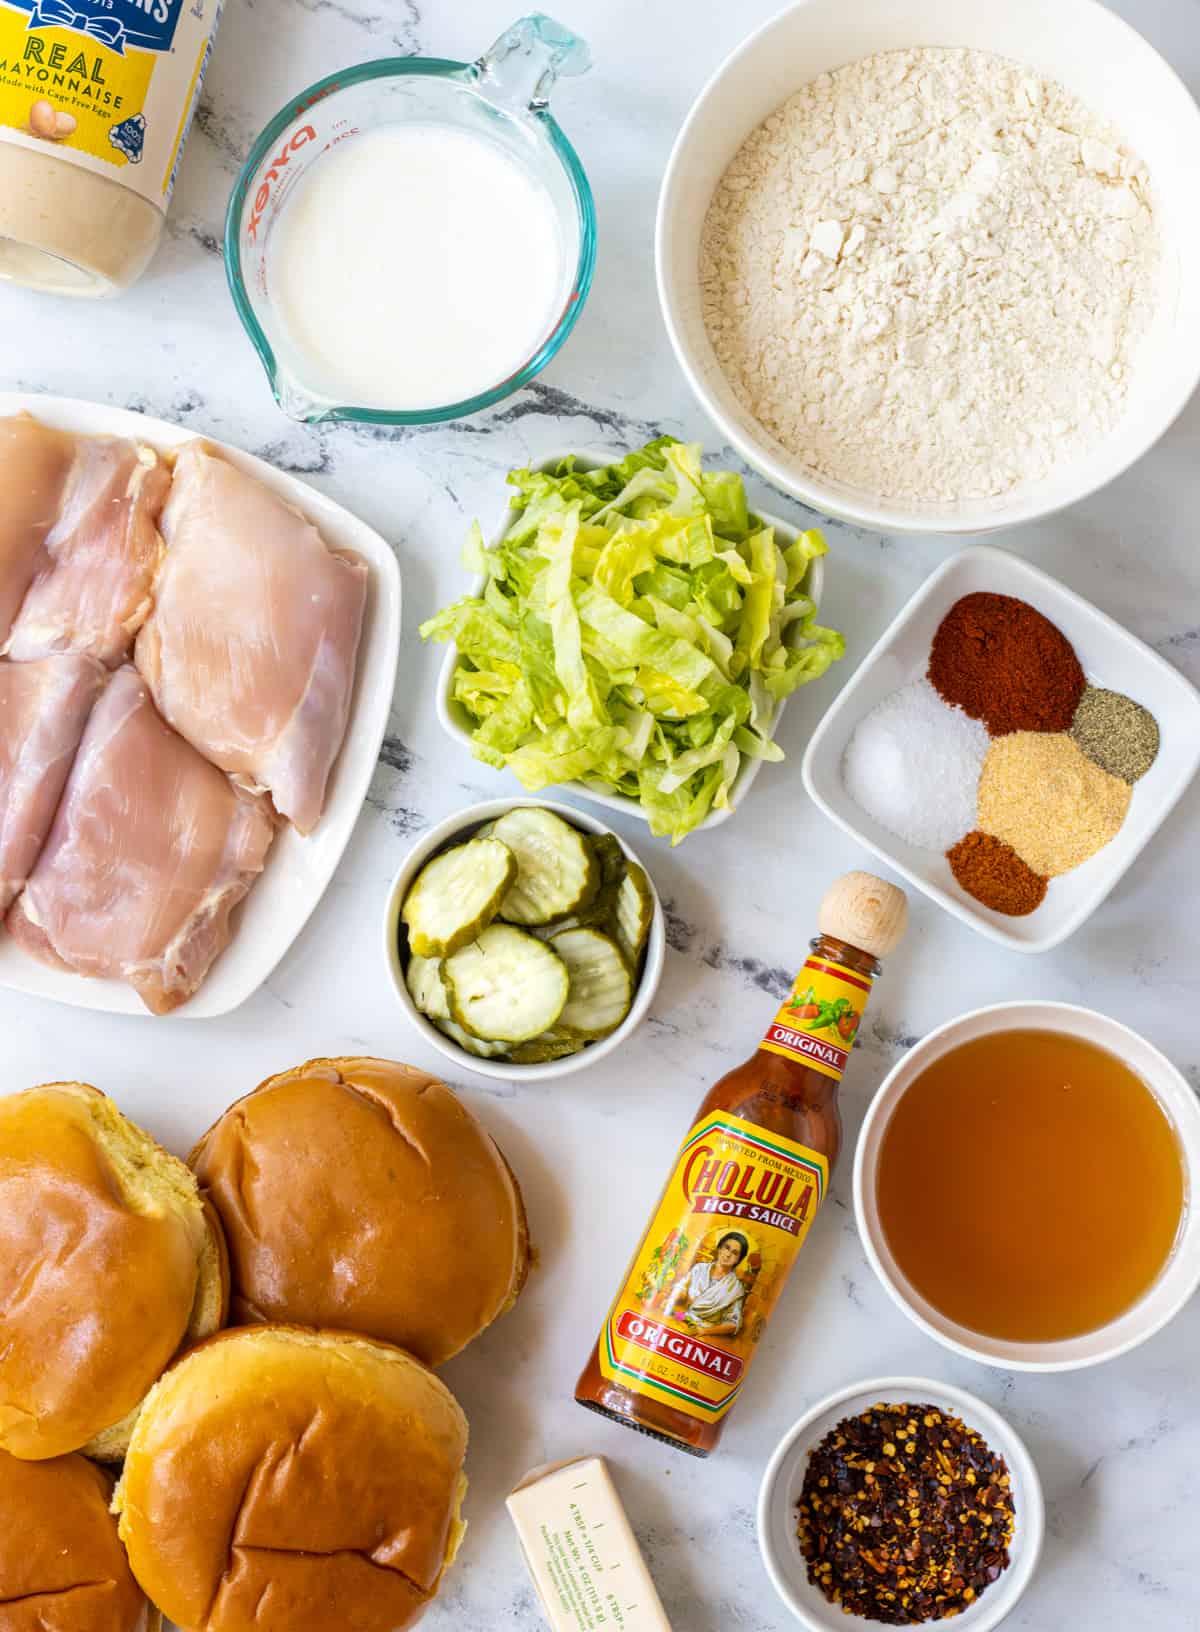 Ingredients for hot honey chicken sandwiches.